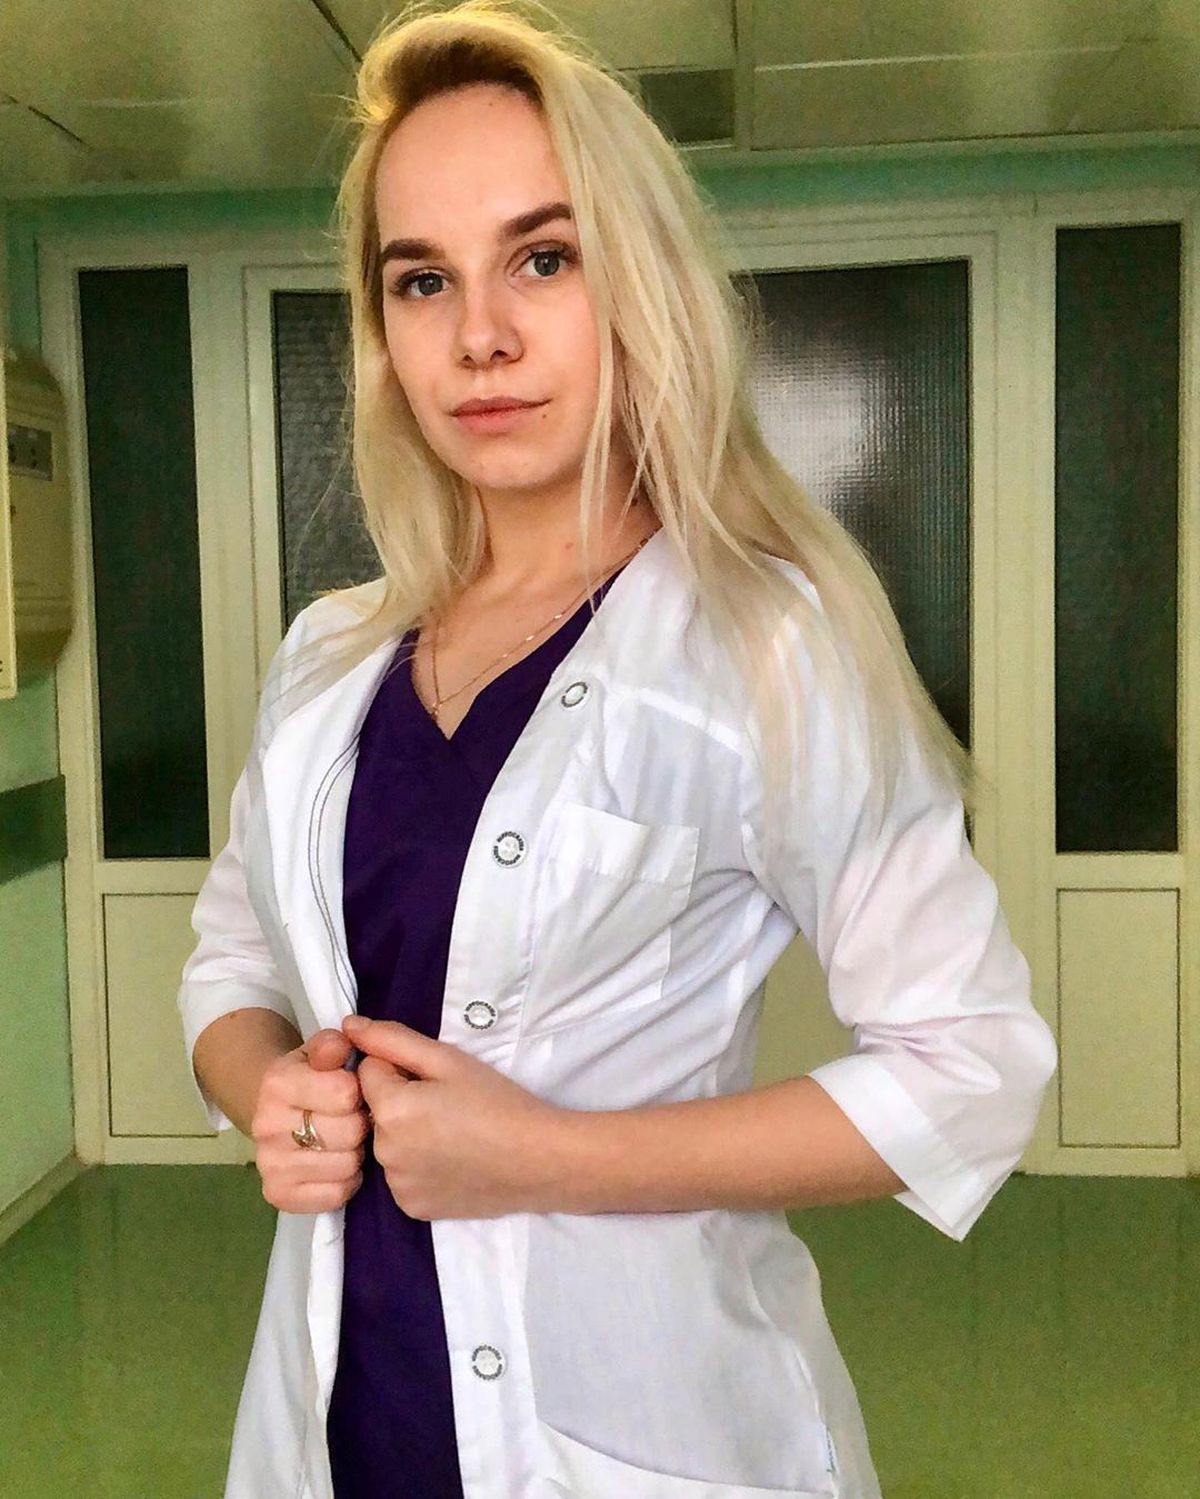 FOTO Ce s-a întâmplat cu asistenta din Rusia care a apărut în lenjerie intimă în fața pacienților: „Am alte priorități în viață”